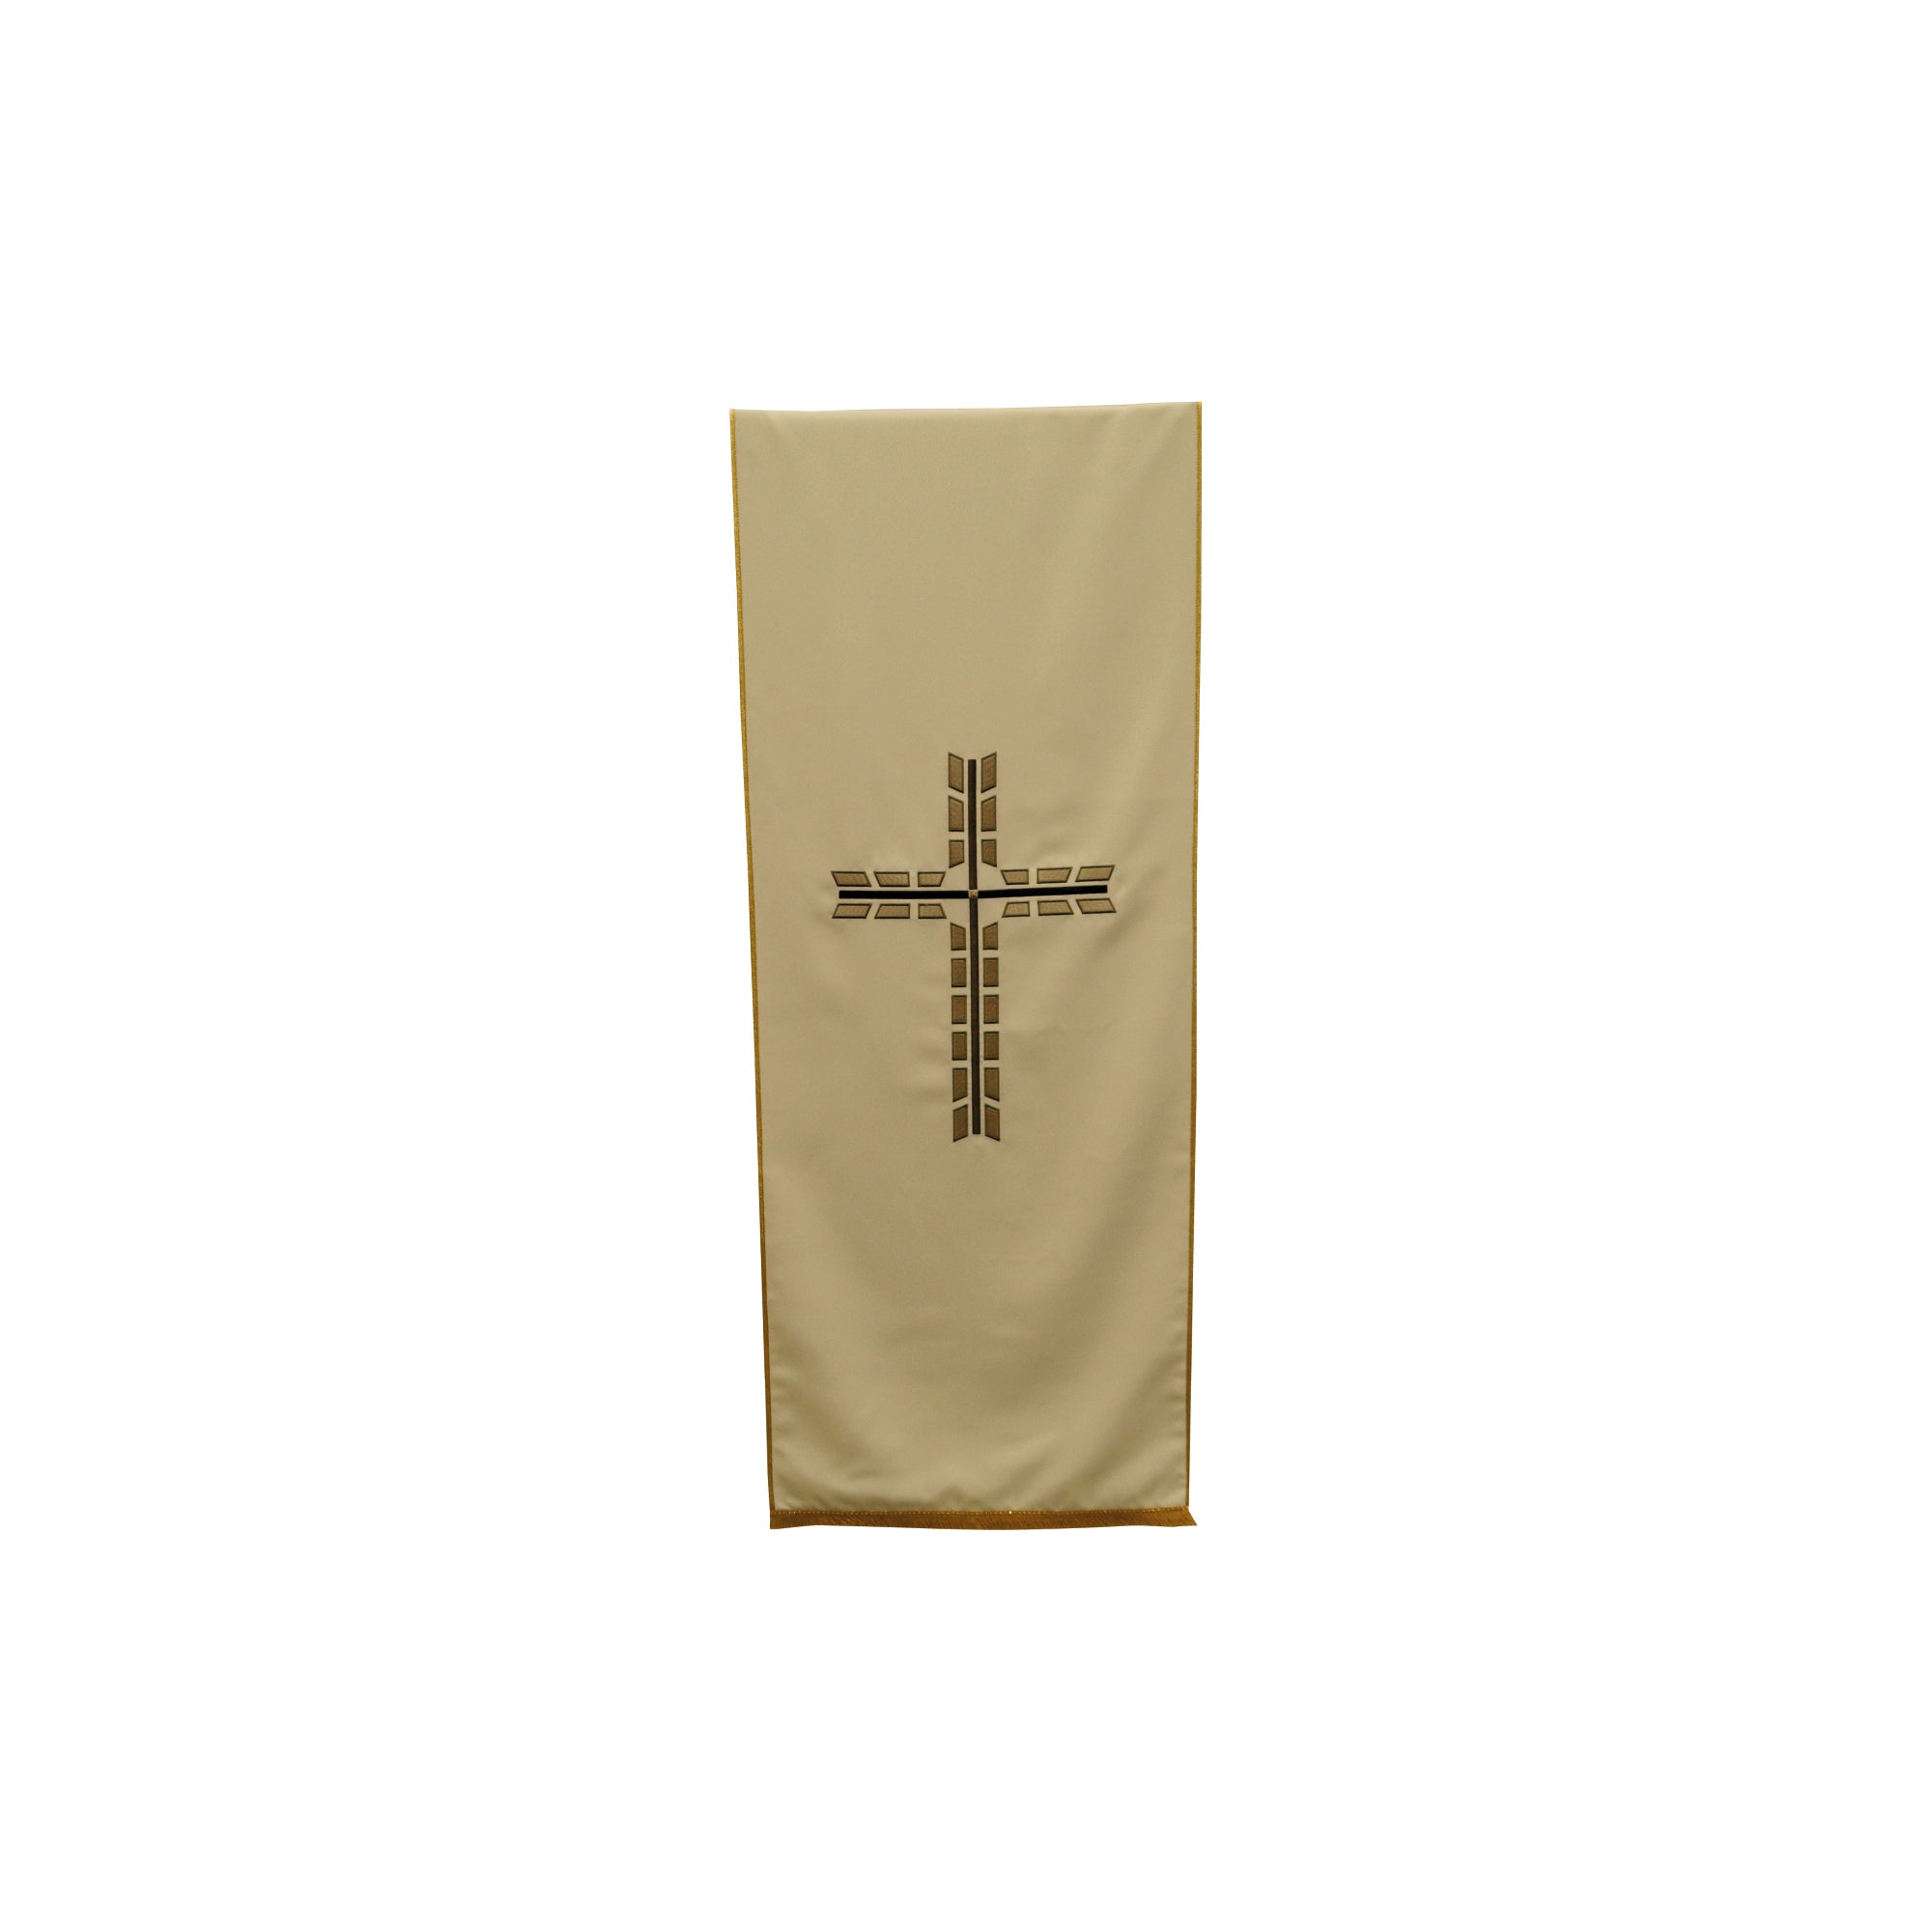 Coprileggio Liturgico Quattro colori con Croce spezzata in poliestere